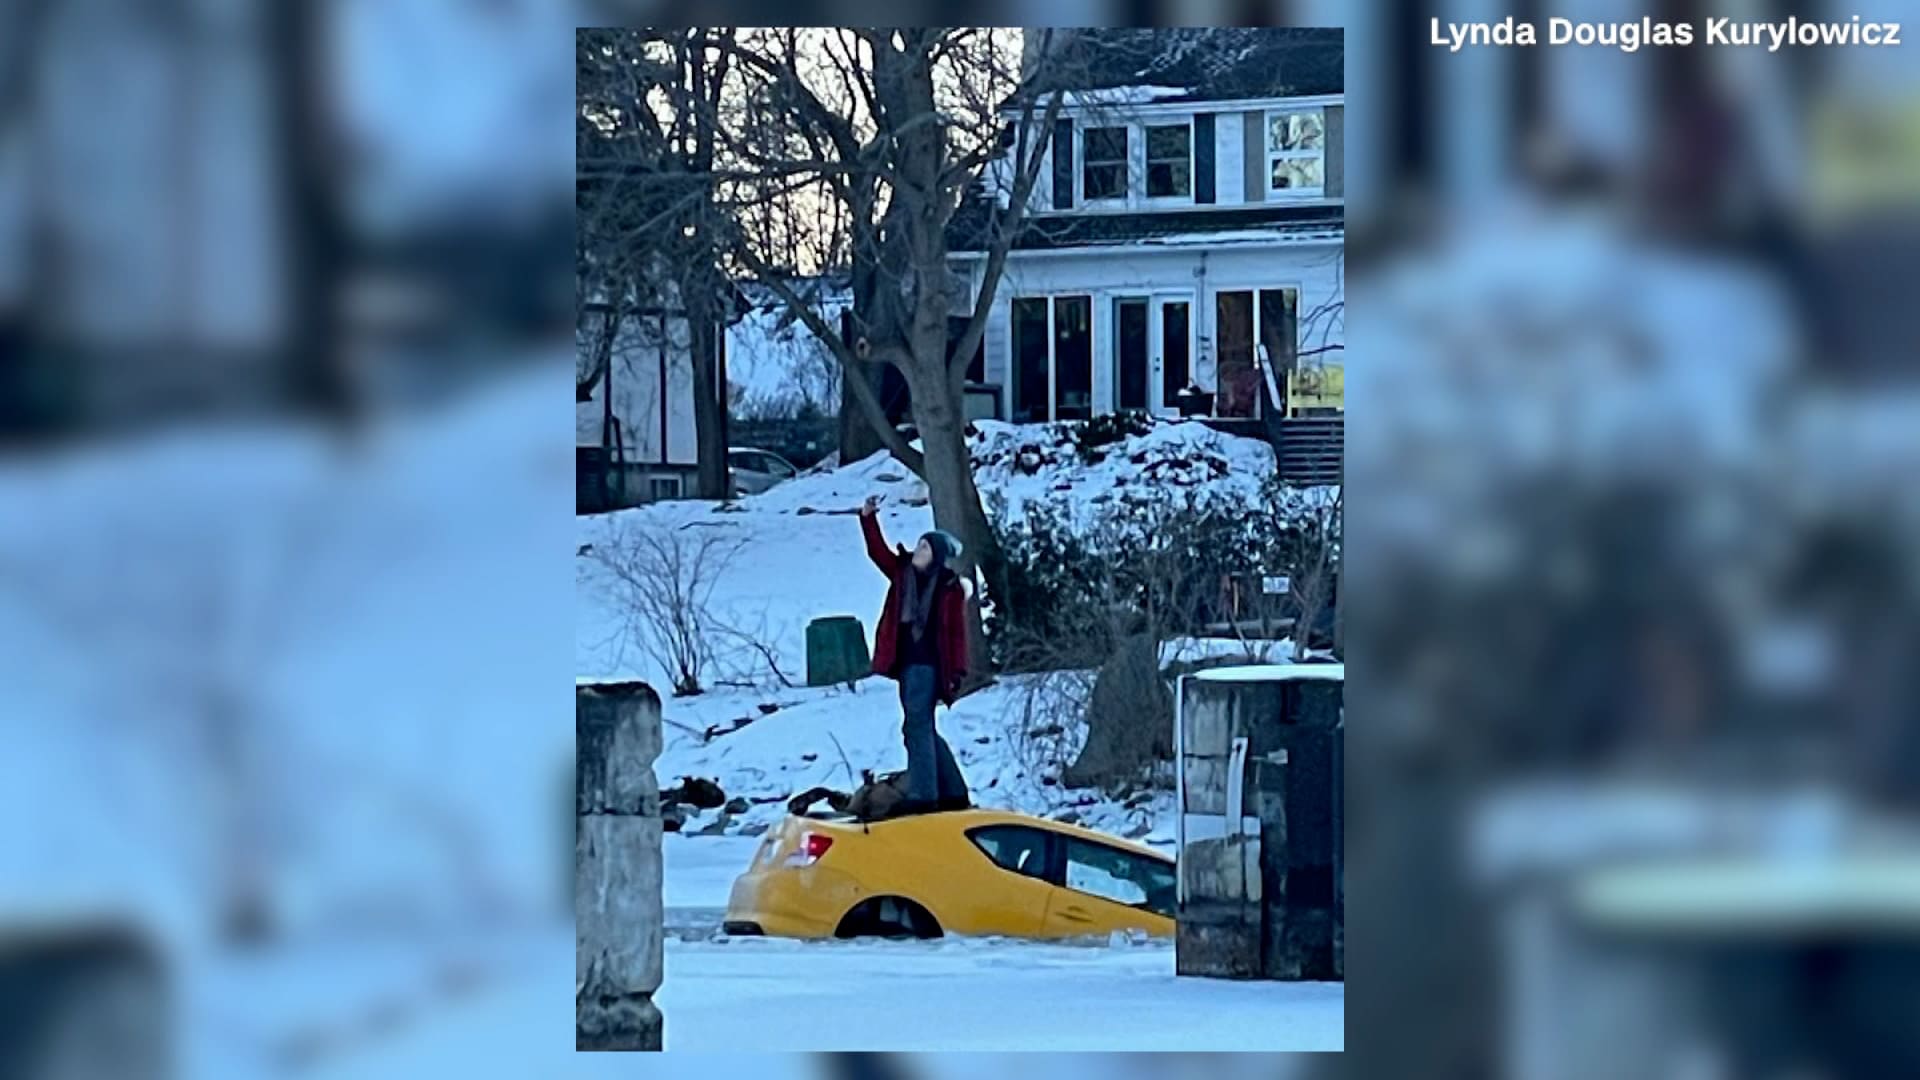 سيدة تقود سيارتها بجنون على جليد رقيق قبل أن تلتقط "سيلفي" أثناء غرقها